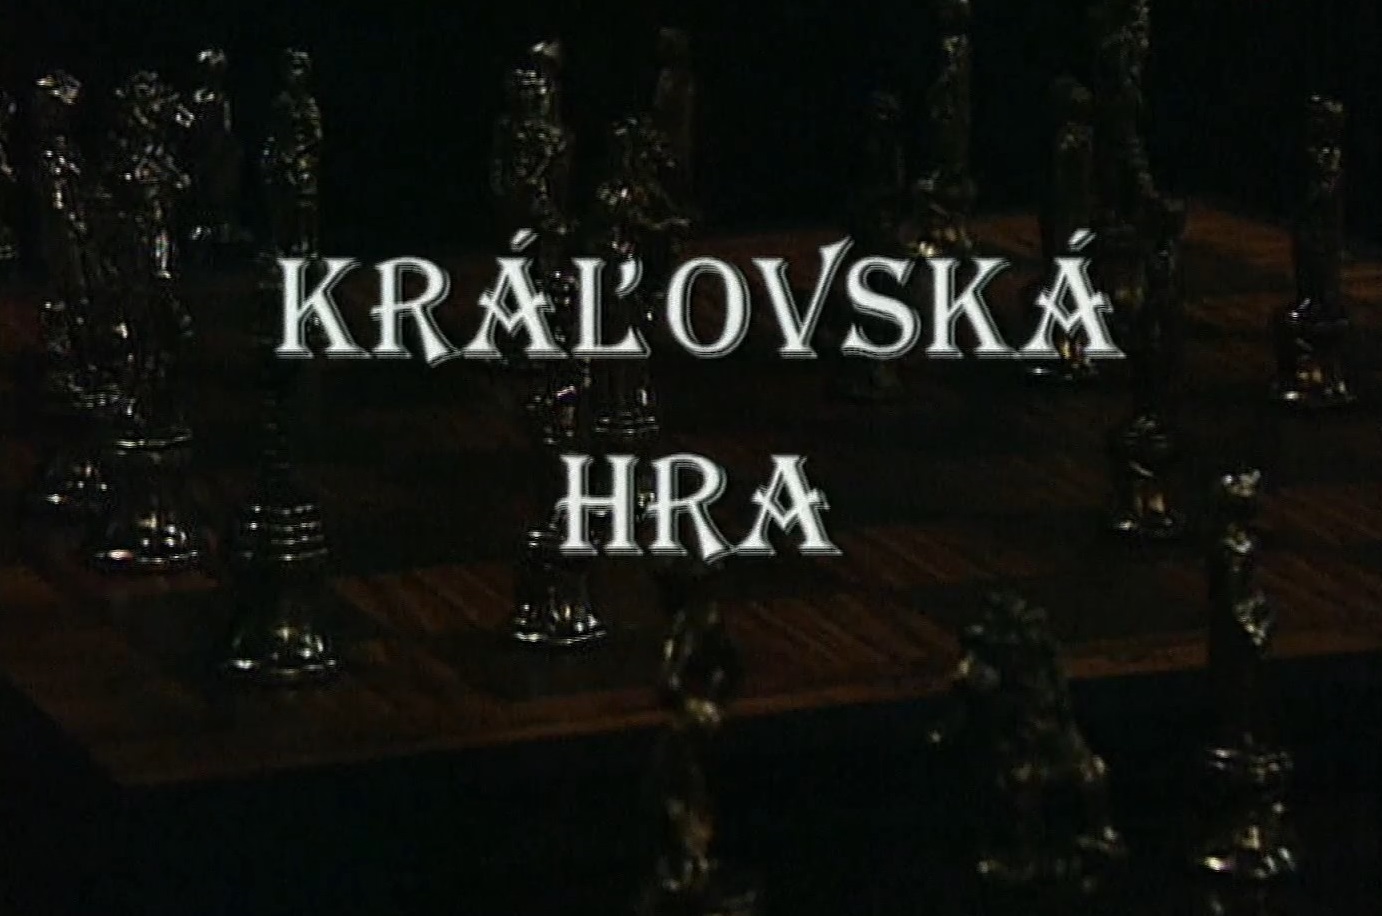 Stiahni si Filmy CZ/SK dabing Kralovnska hra (1999)(SK)[TvRip] = CSFD 74%